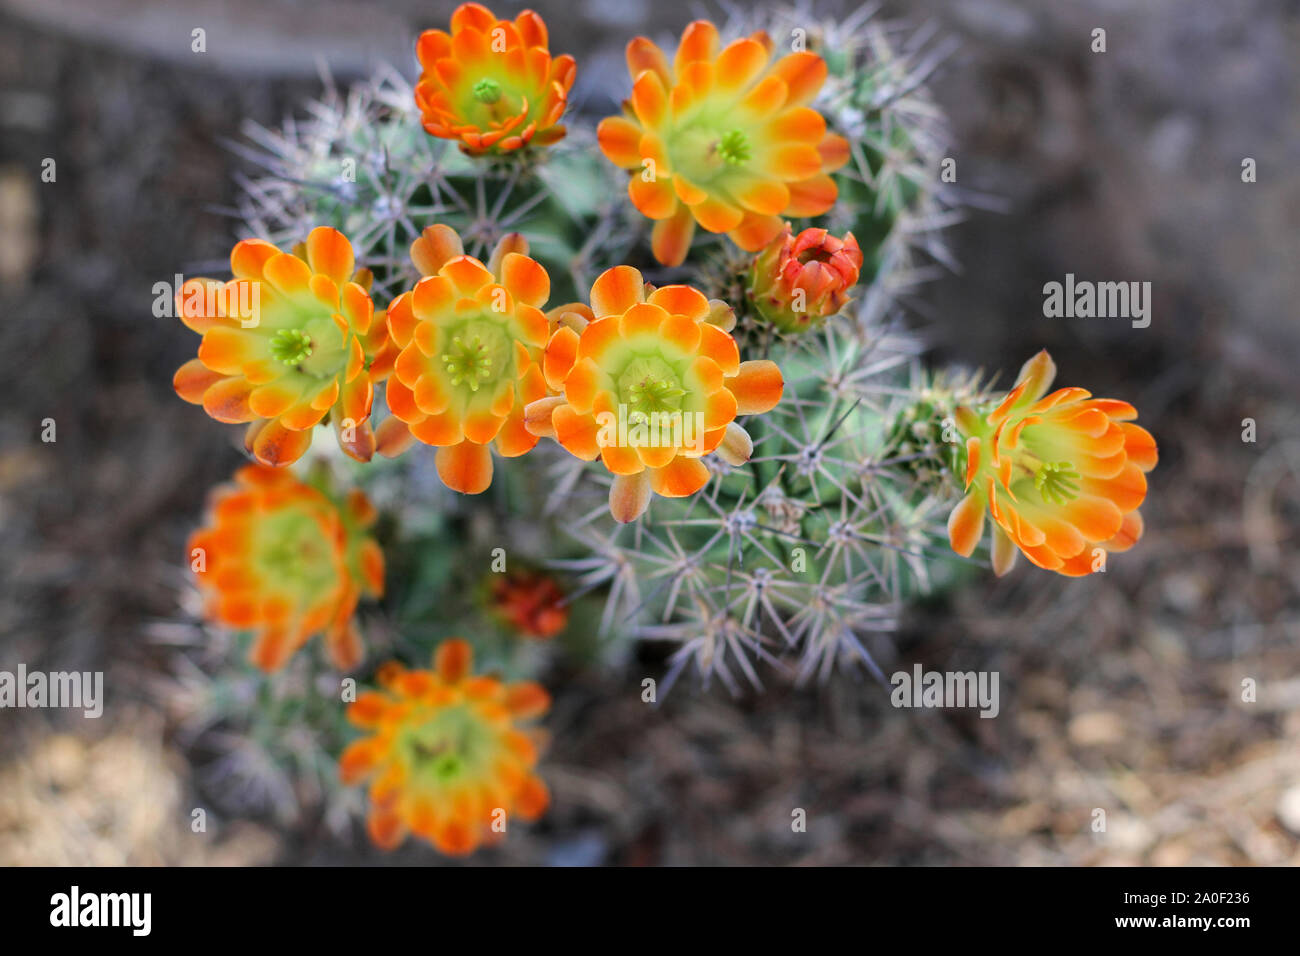 Orange gelb Blumen blühen auf Igel Kaktus in der Wüste. Scharfe Stacheln von Cactus surround Blüten und sind in sanften konzentrieren. Kingcup oder claretcup cactu Stockfoto